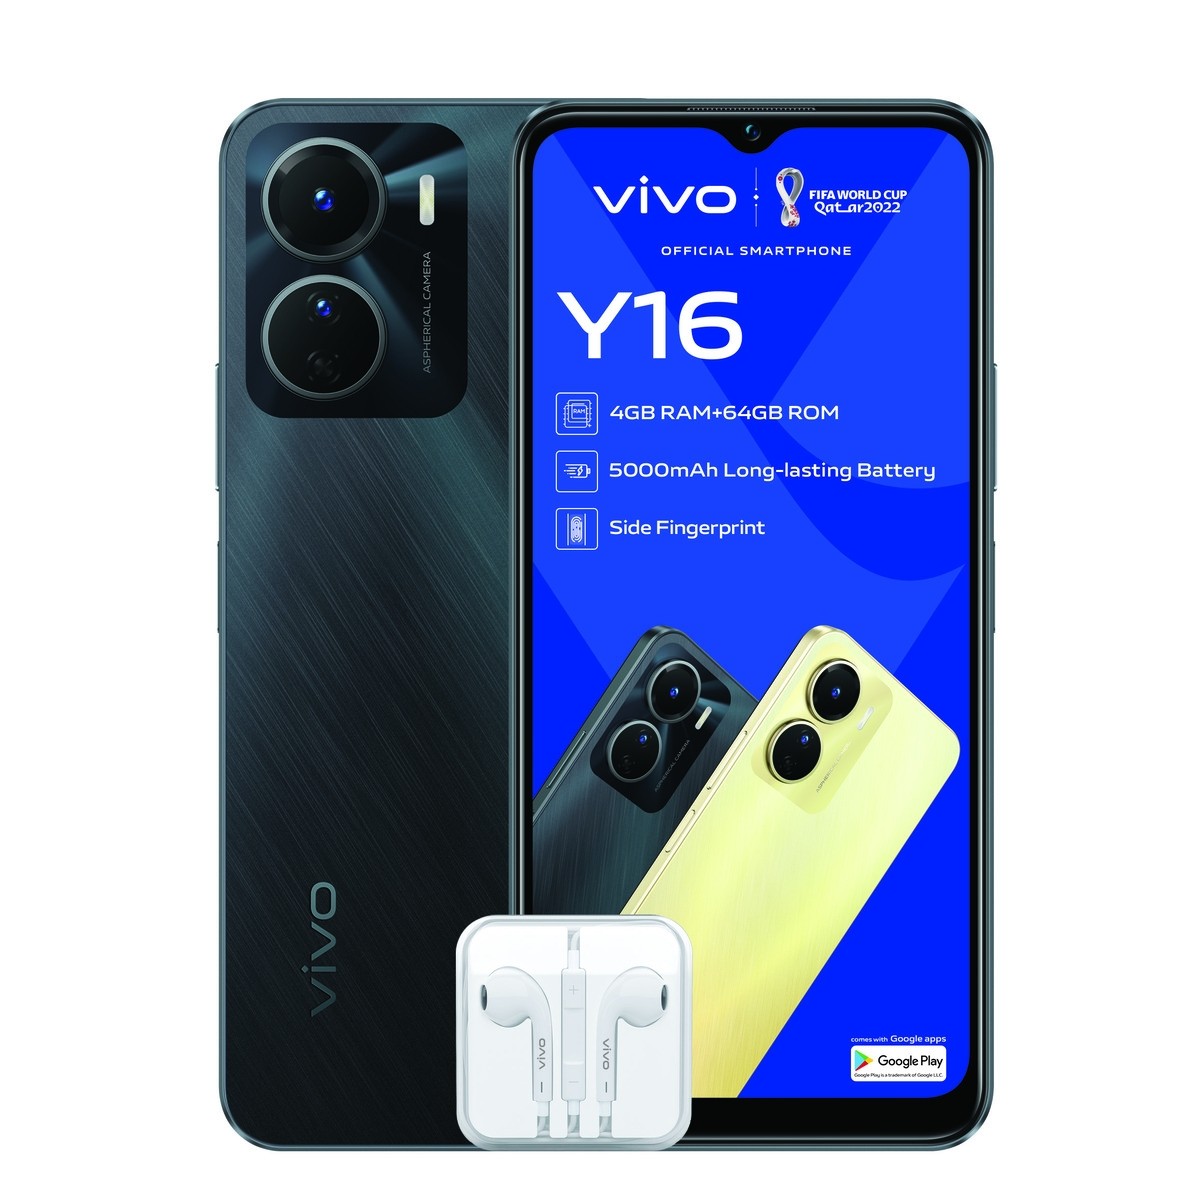 Vivo Y16 (Vodacom)